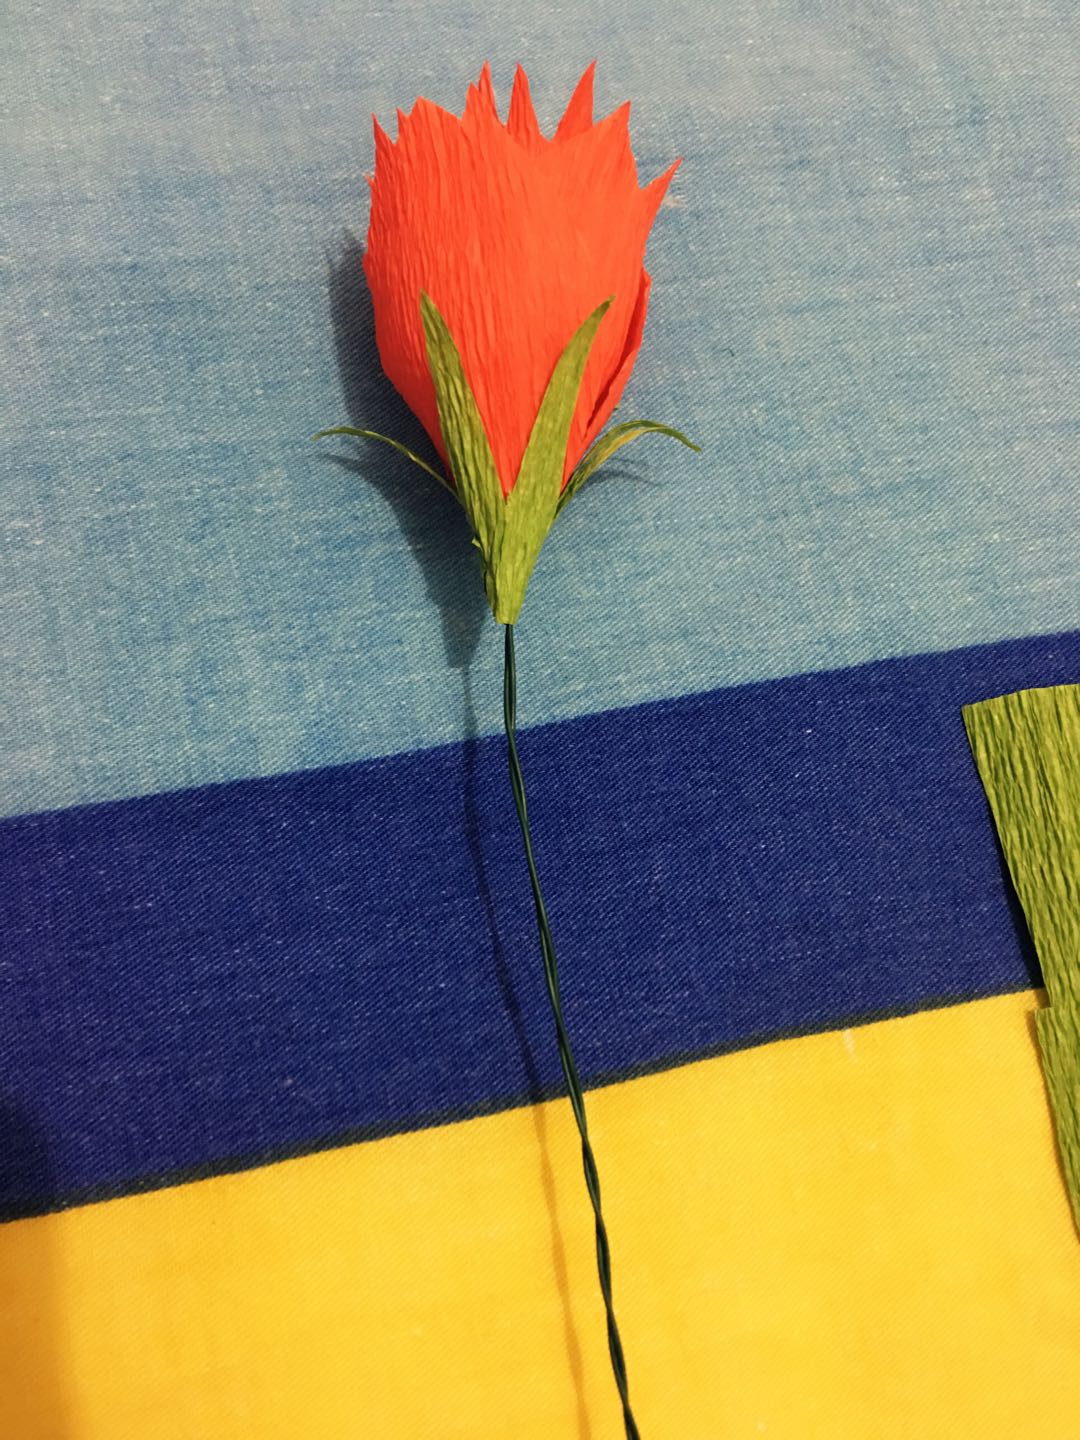 漂亮的彩纸菊花折叠步骤图 创意DIY花卉纸艺教程（孔雀折纸步骤图解视频教程） - 有点网 - 好手艺